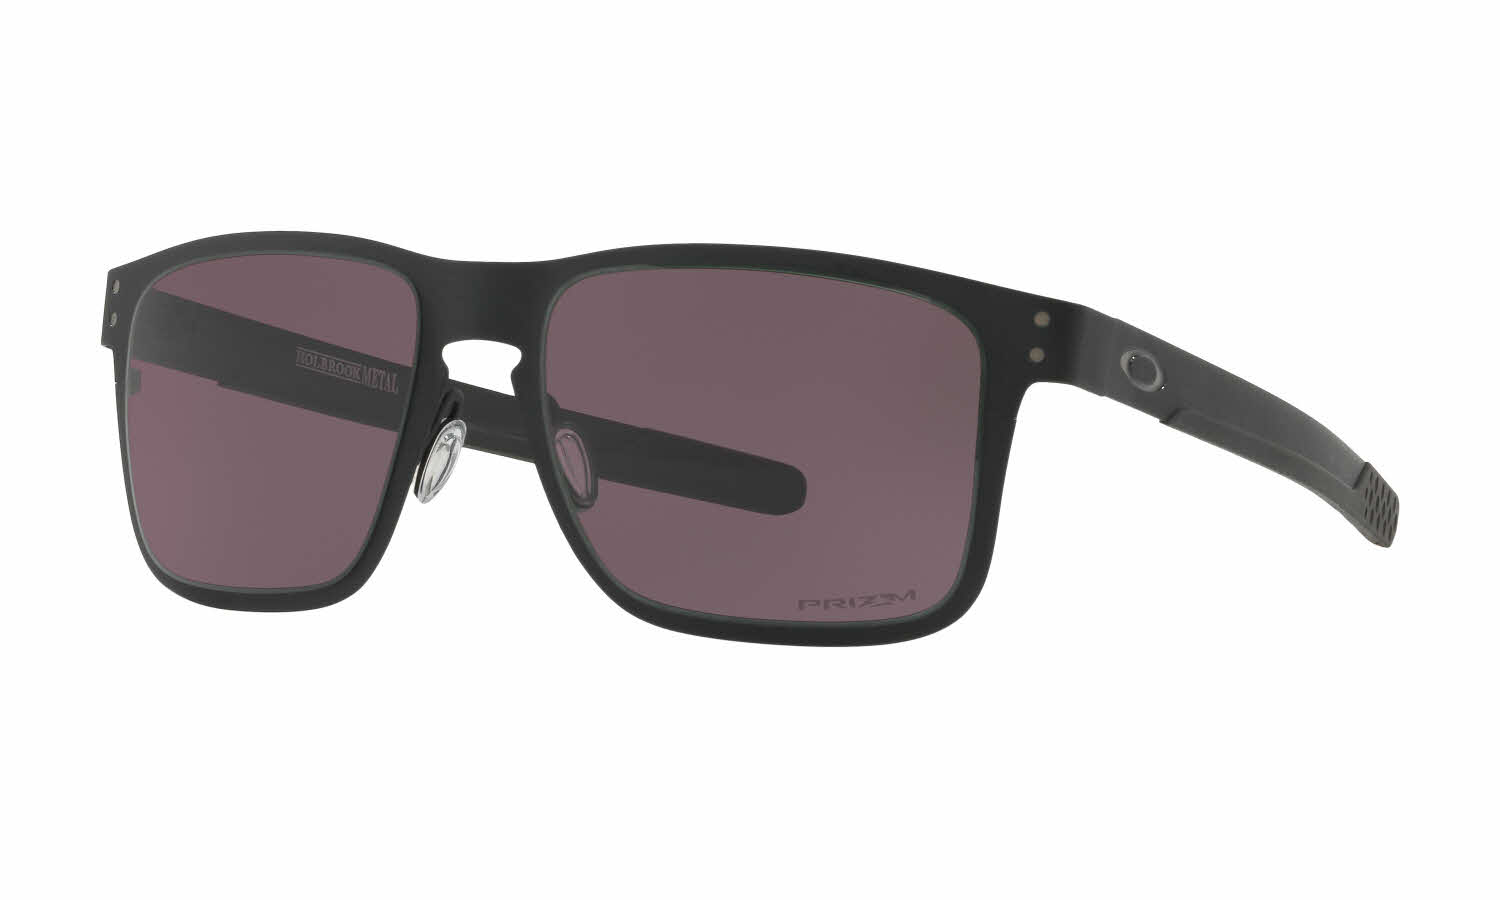 Dalset Larry Belmont Ham selv Oakley Holbrook Metal Sunglasses | FramesDirect.com